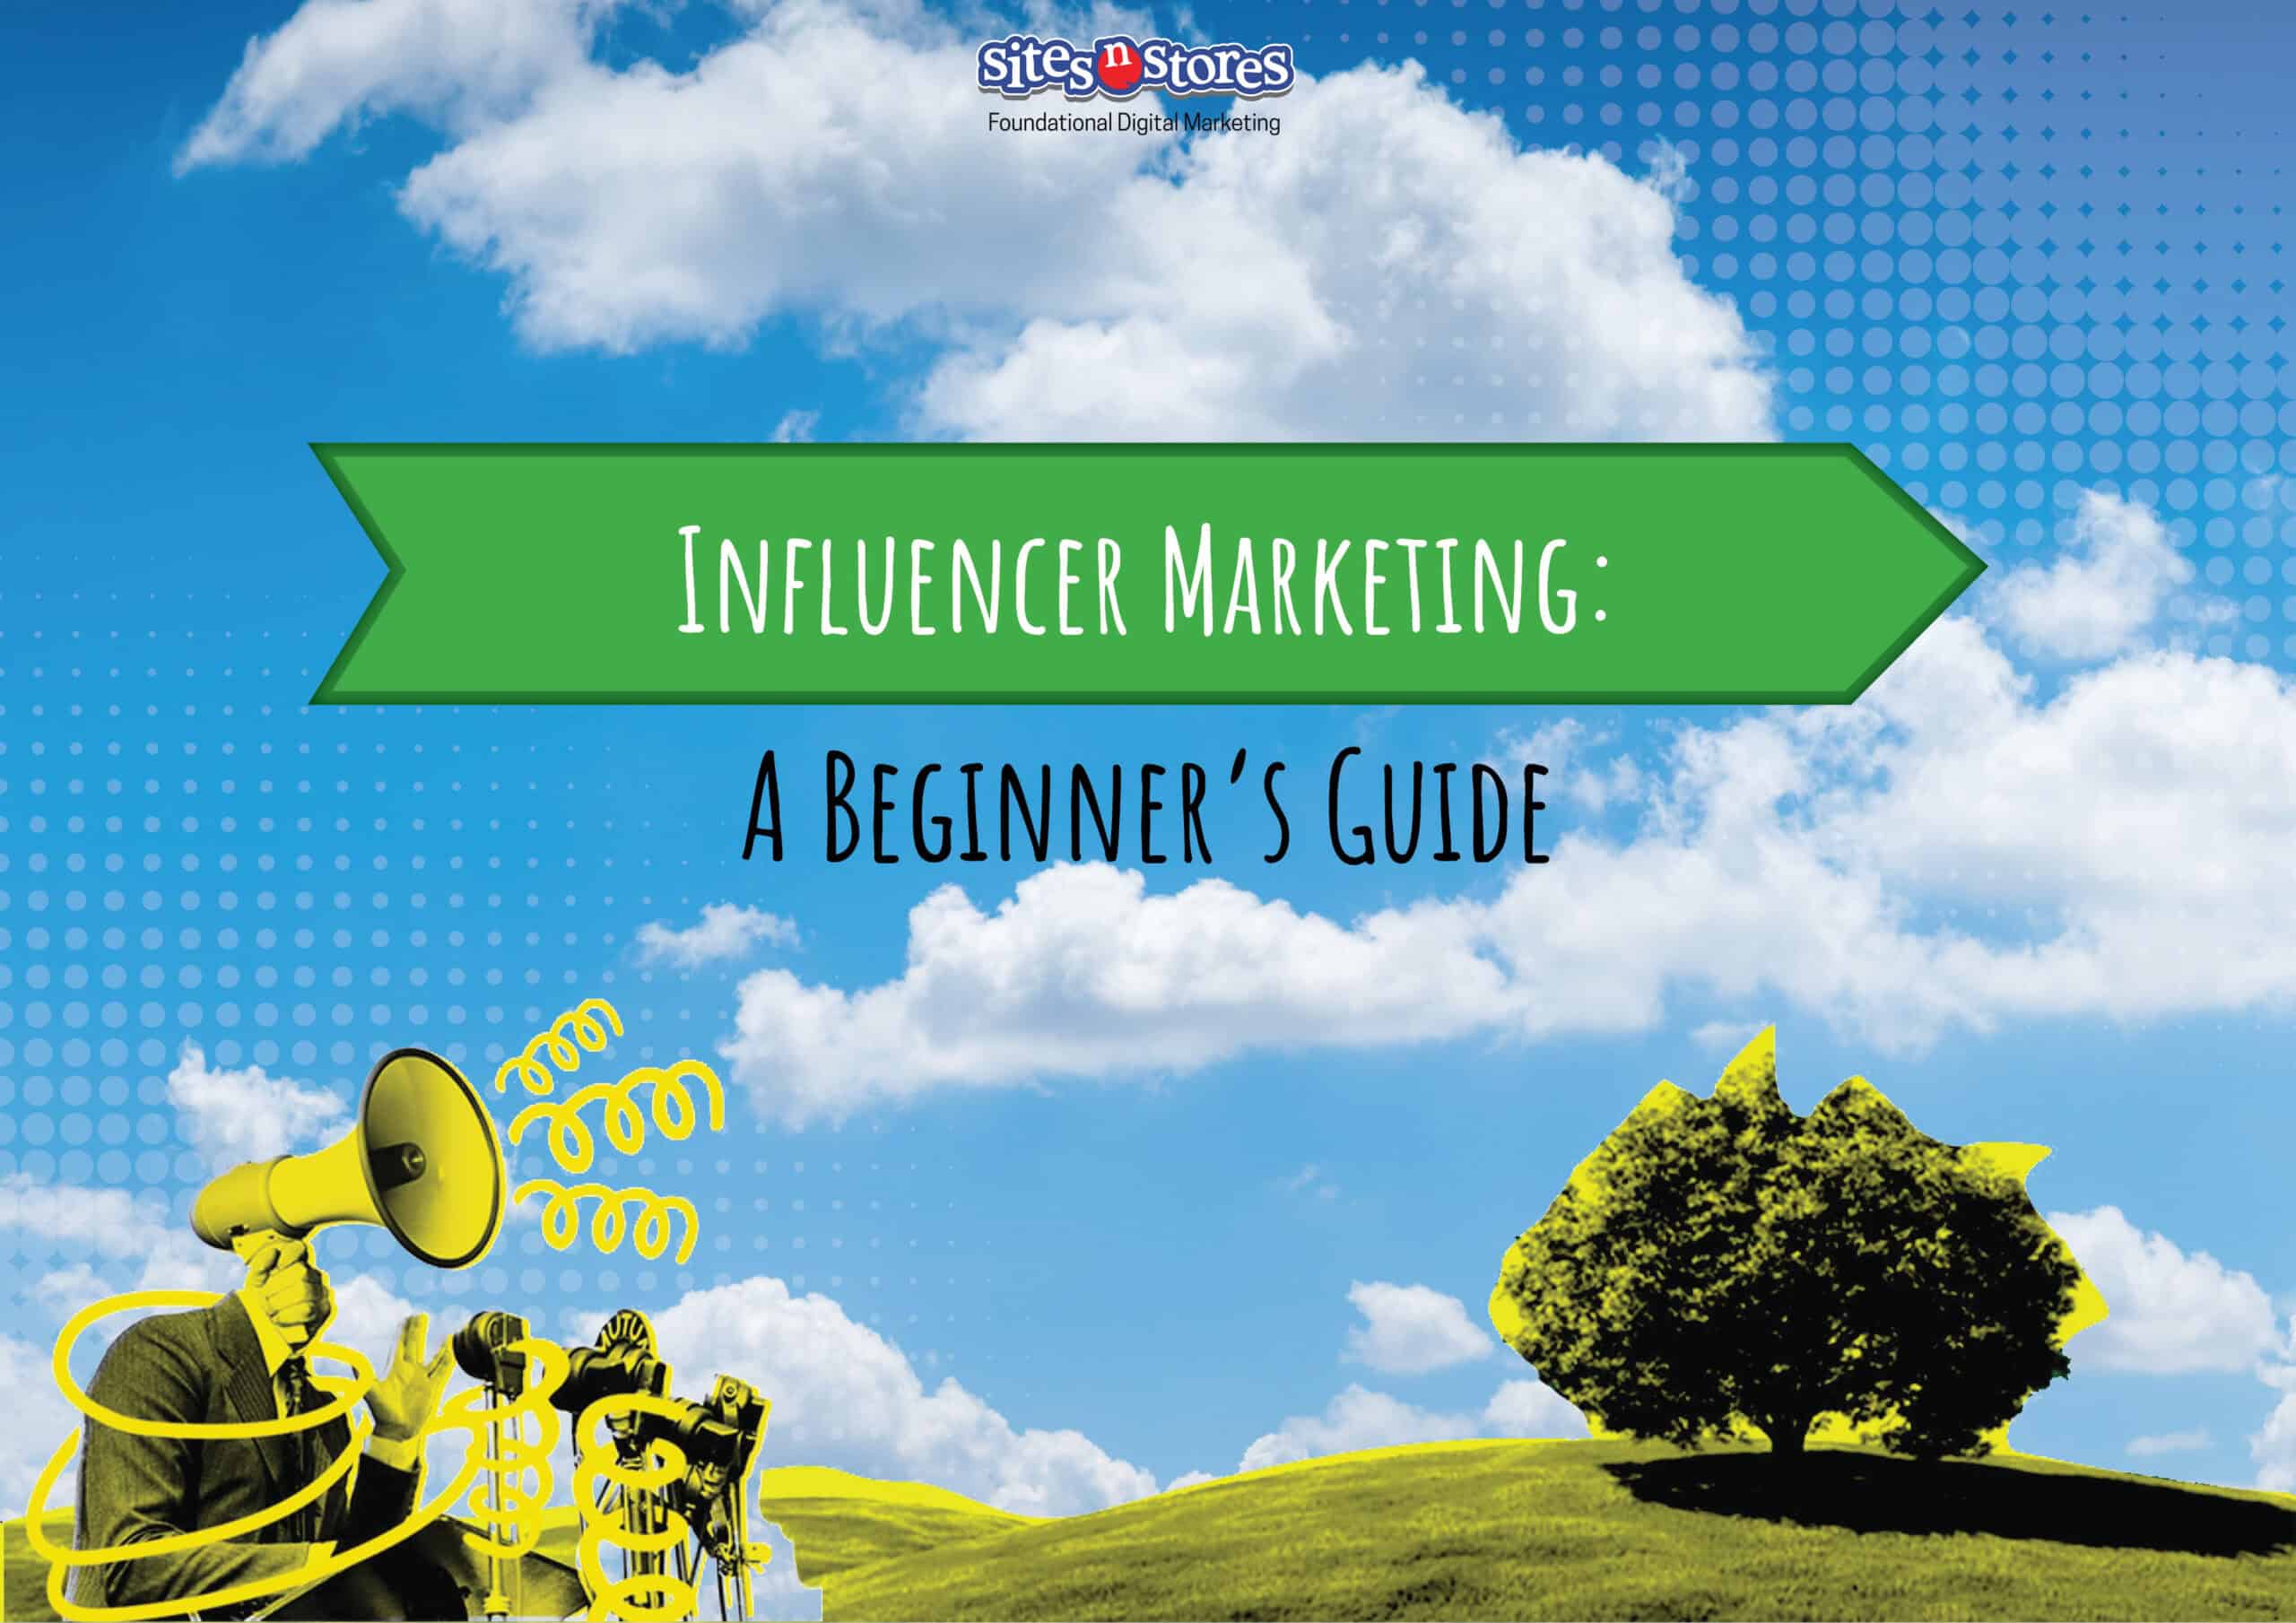 Influencer Marketing: A Beginner’s Guide